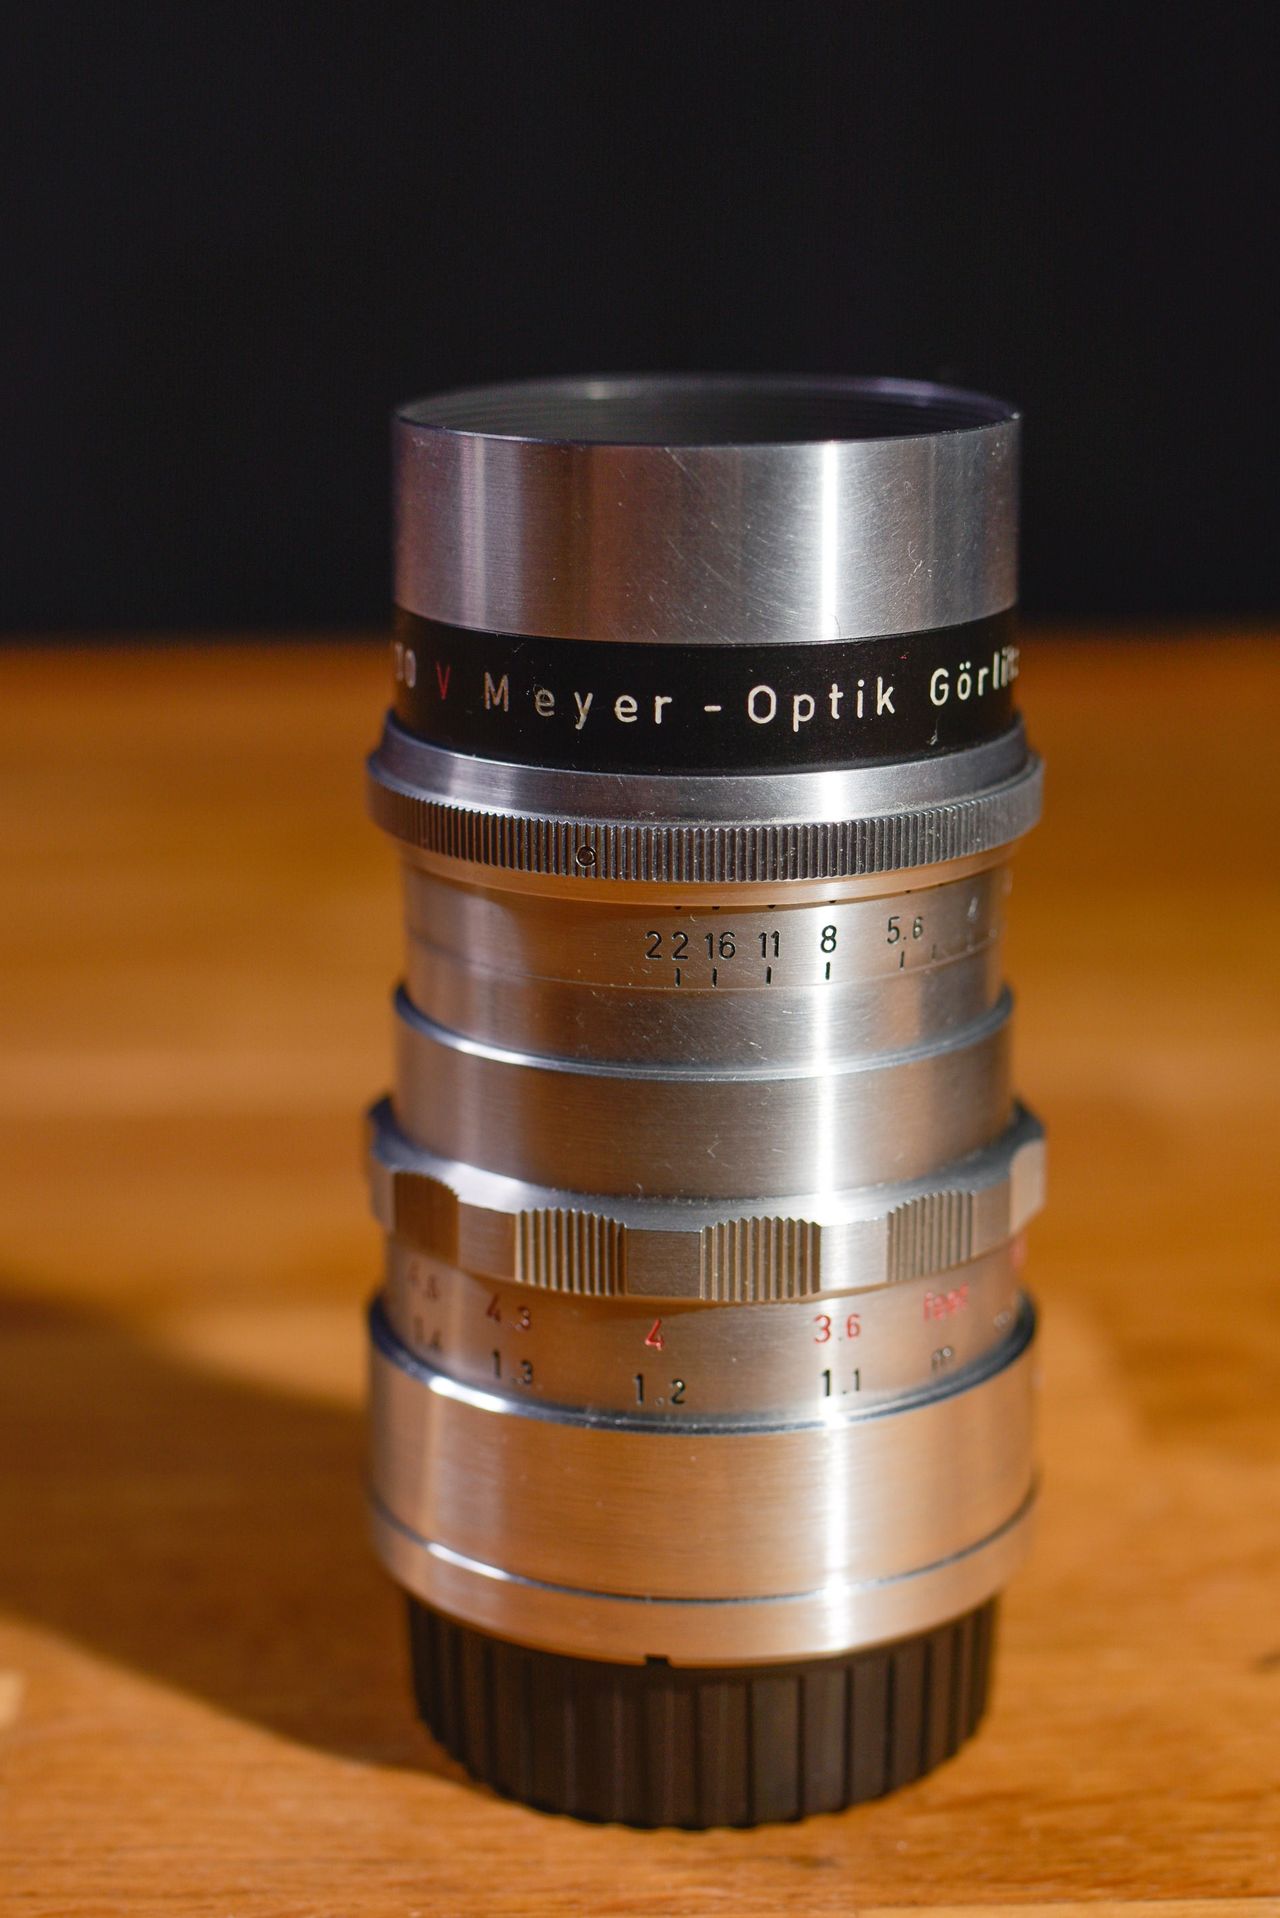 Meyer Optik Grlitz Trioplan100mmF2.8ライカM